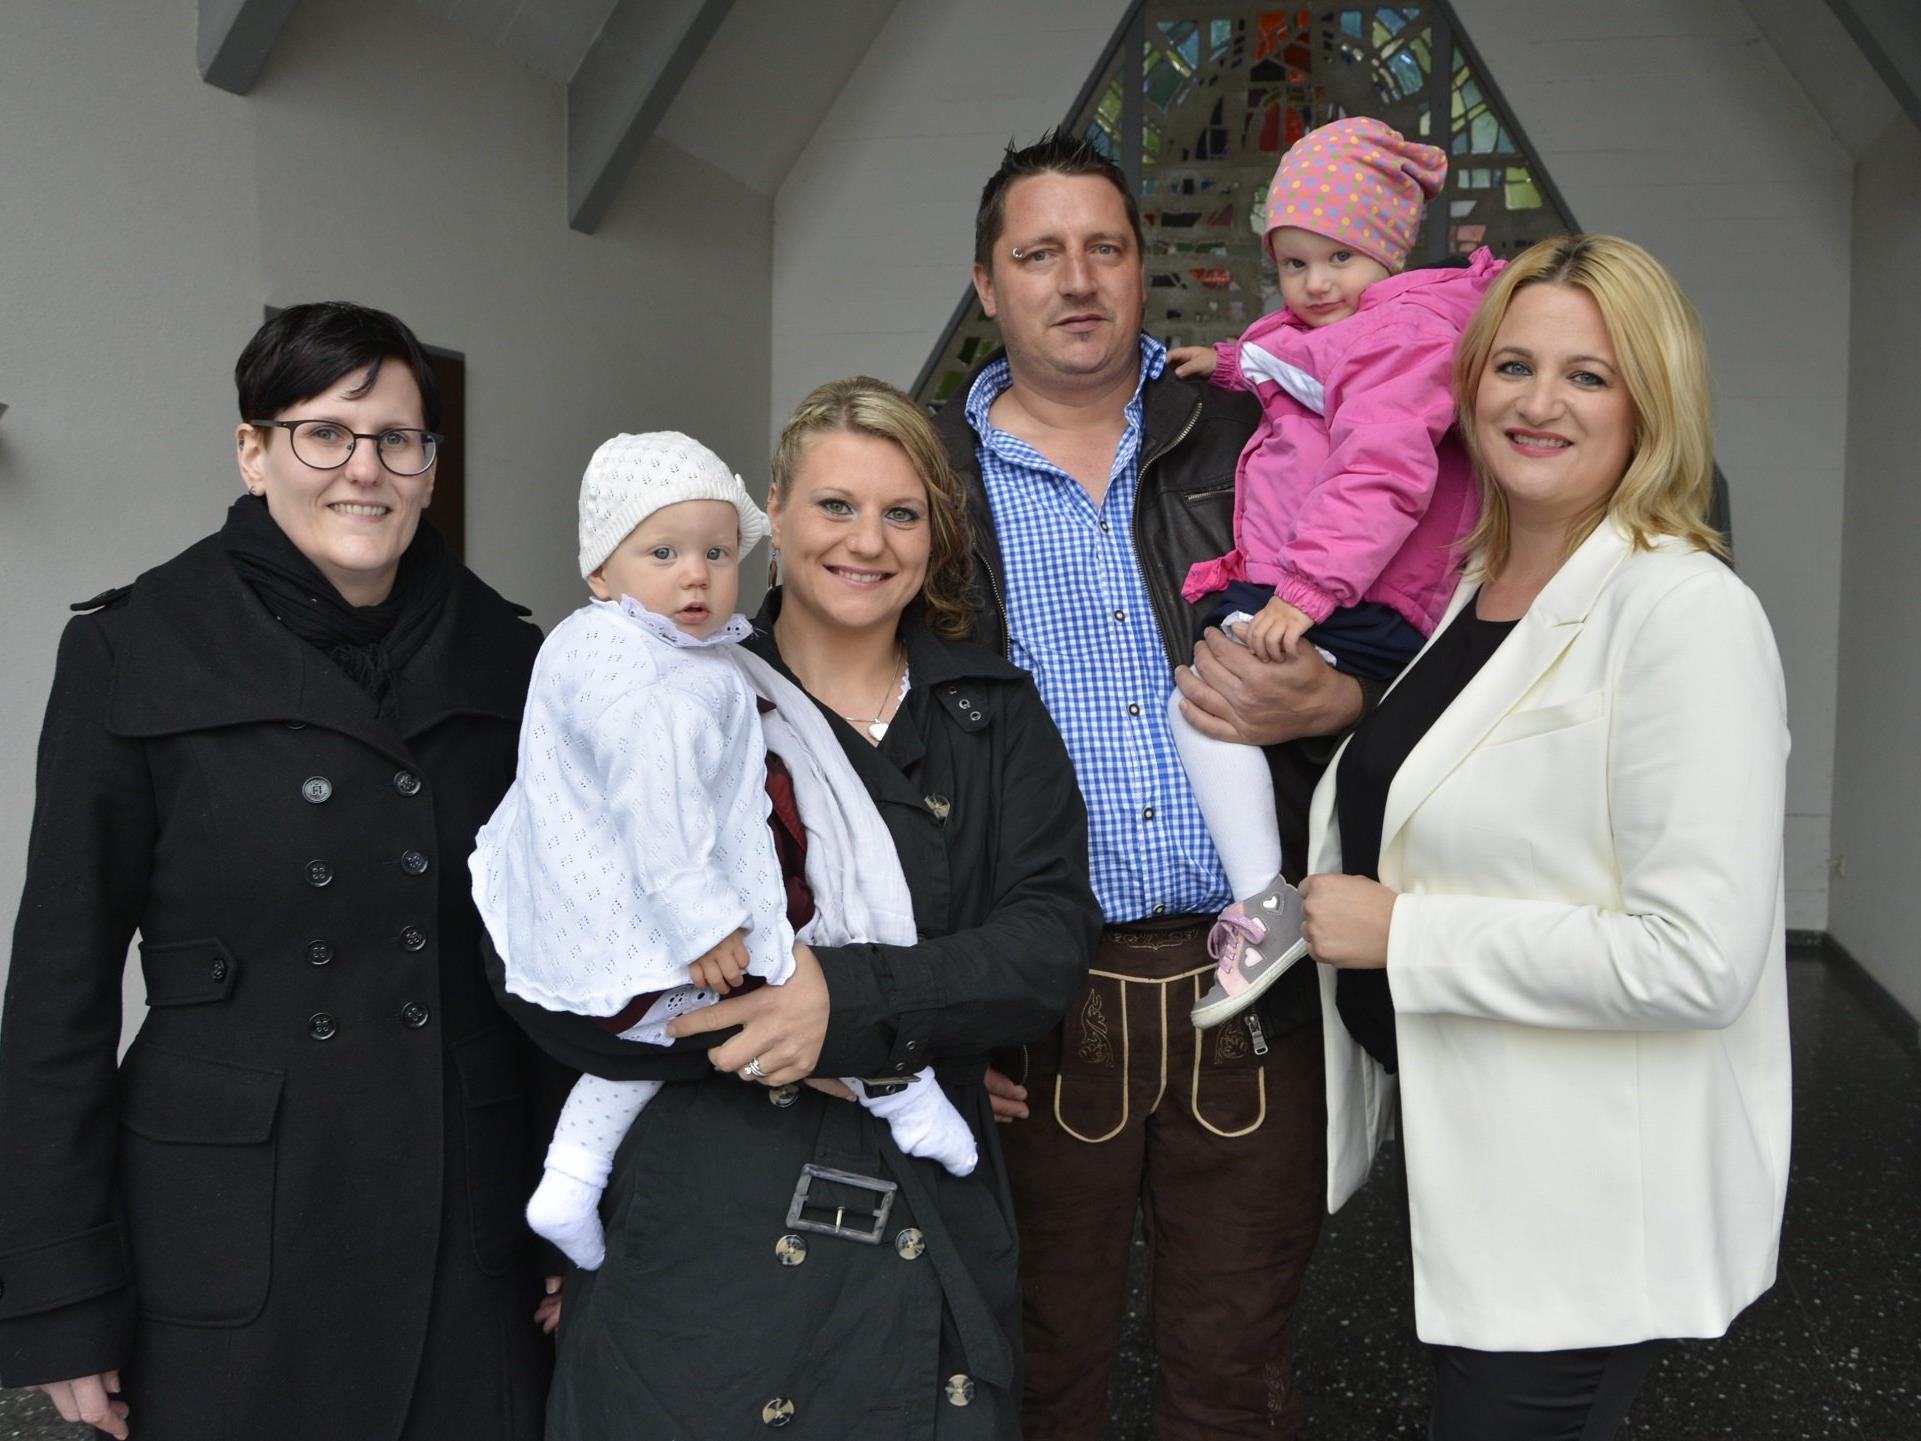 Marie, das zweite Kind von Caroline Hopfner und Markus Haselwanner, empfing die Taufe.